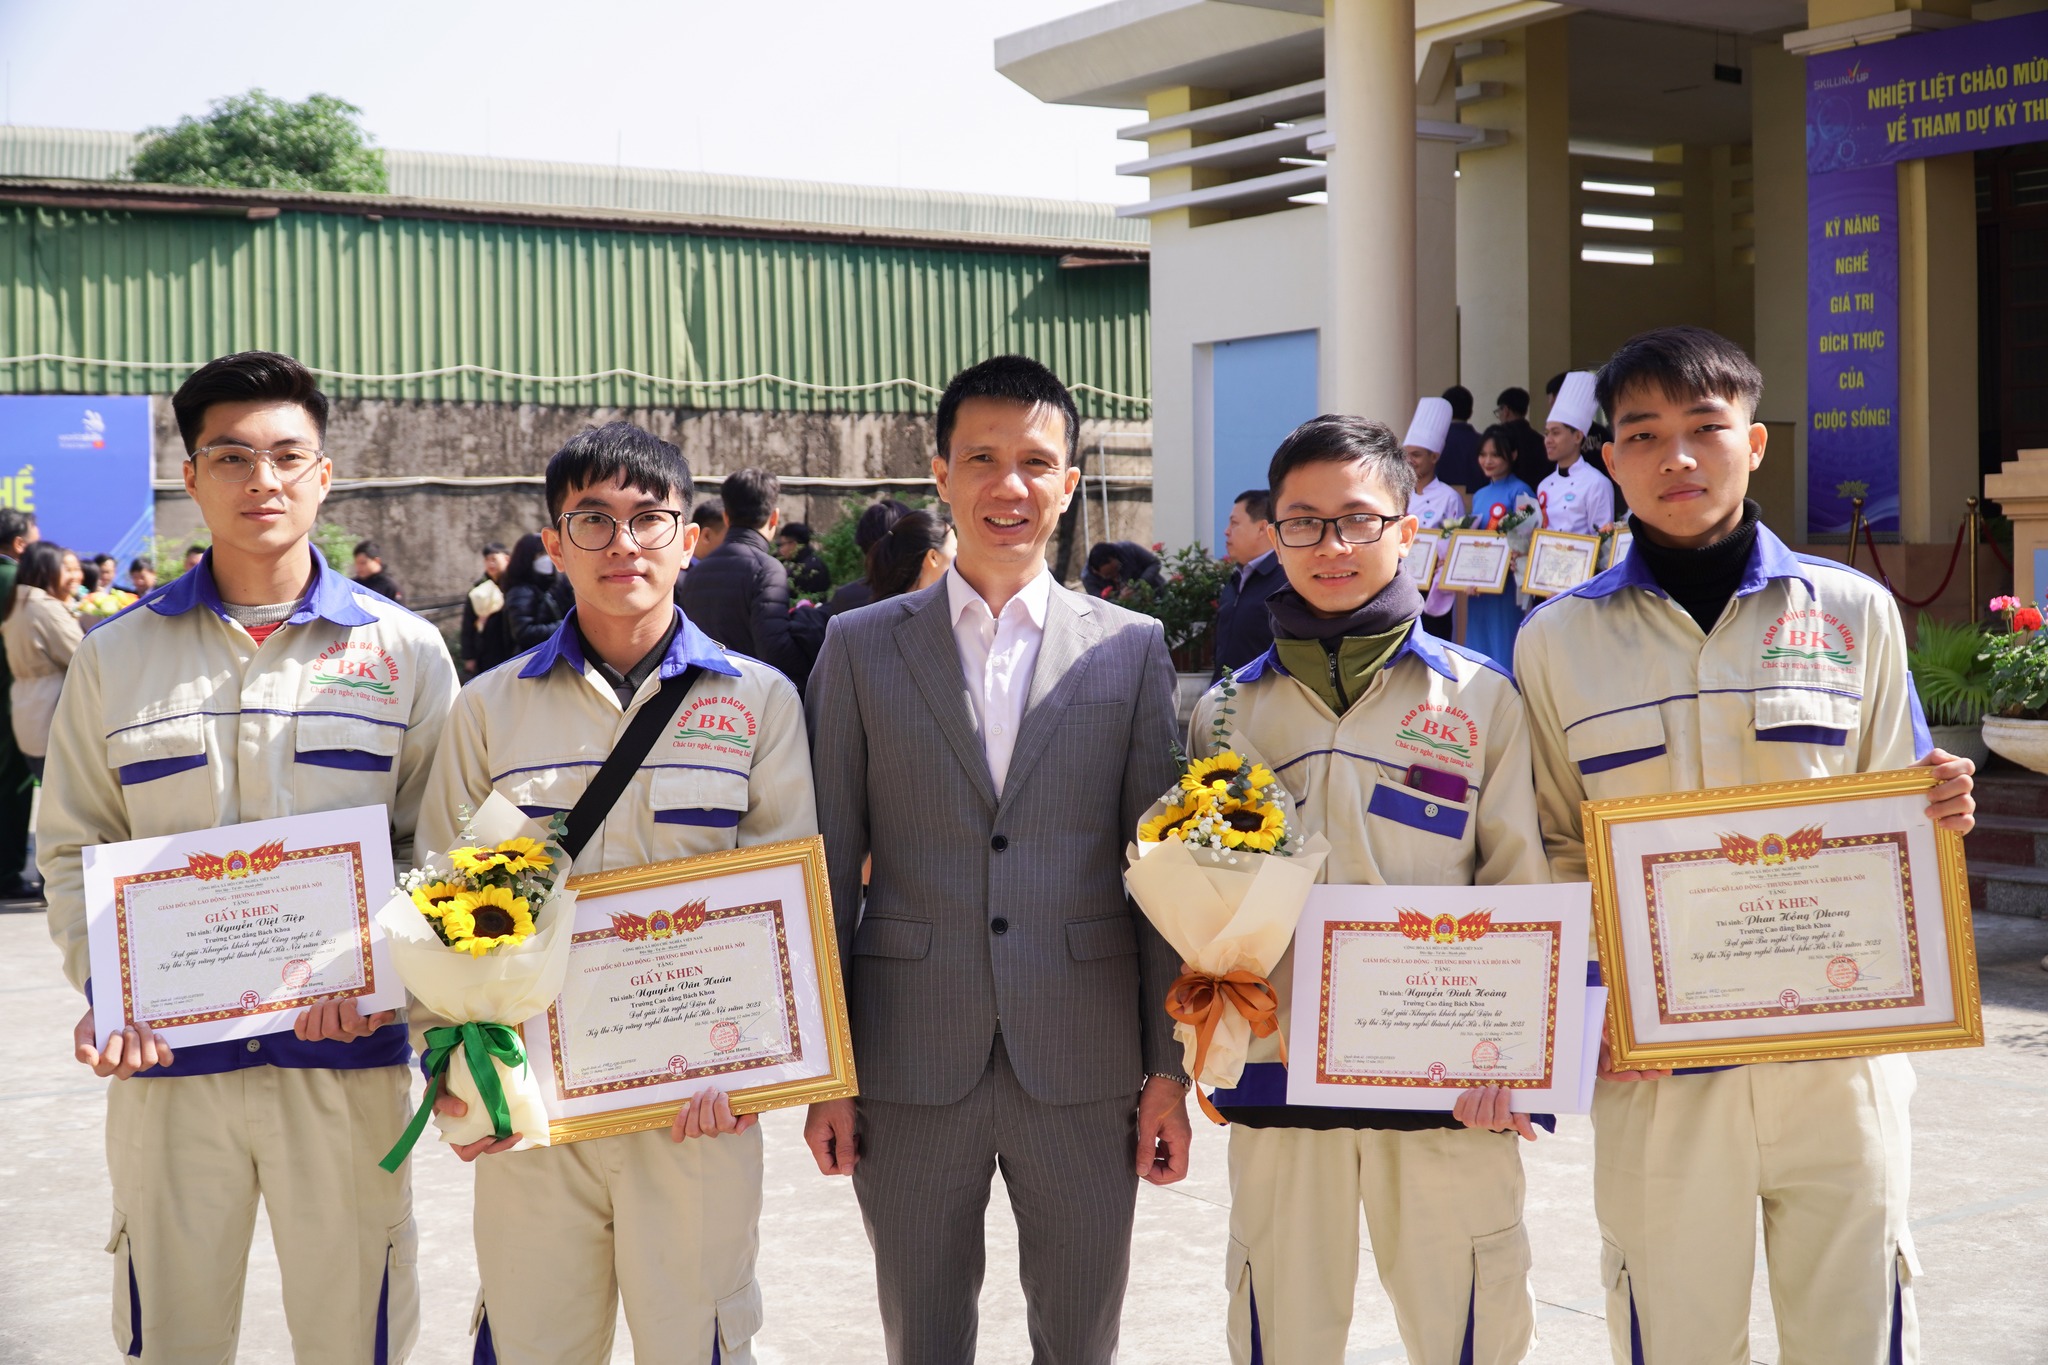 Cả 4 sinh viên tham dự đều đạt giải thưởng trong kỳ thi Kỹ năng nghề